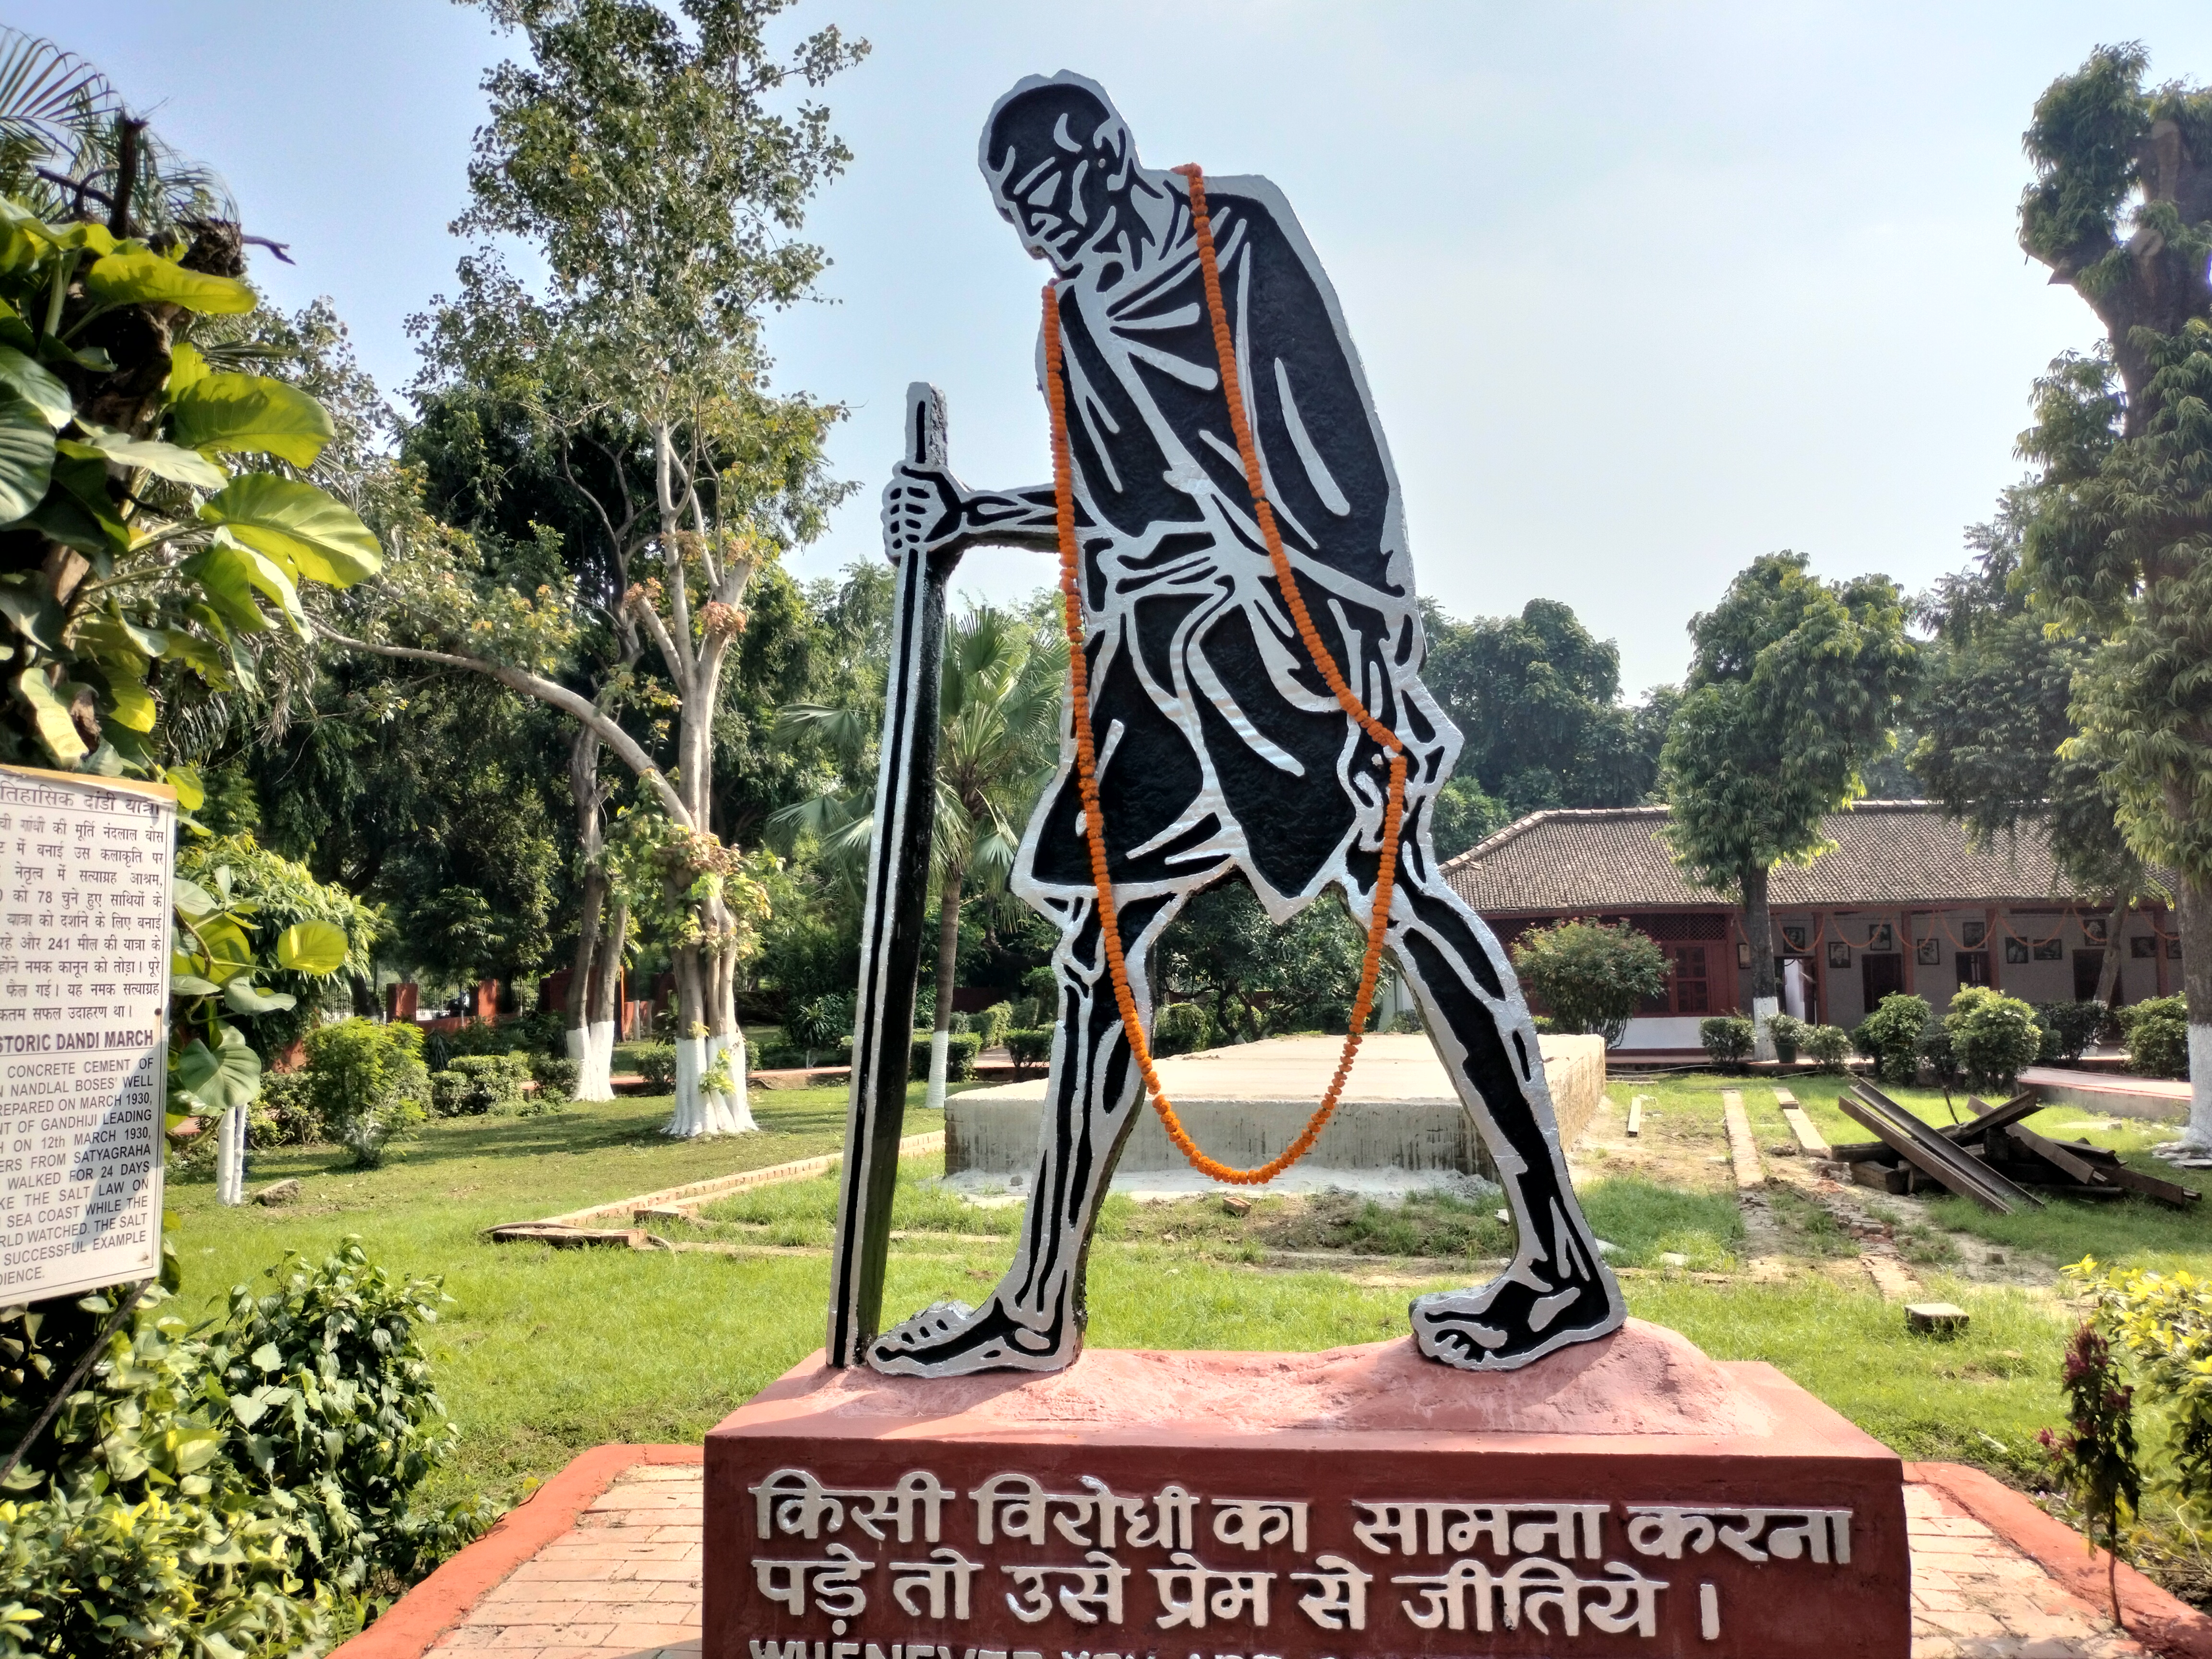 संग्रहालय के प्रांगण में गांधीजी की प्रतिमा.